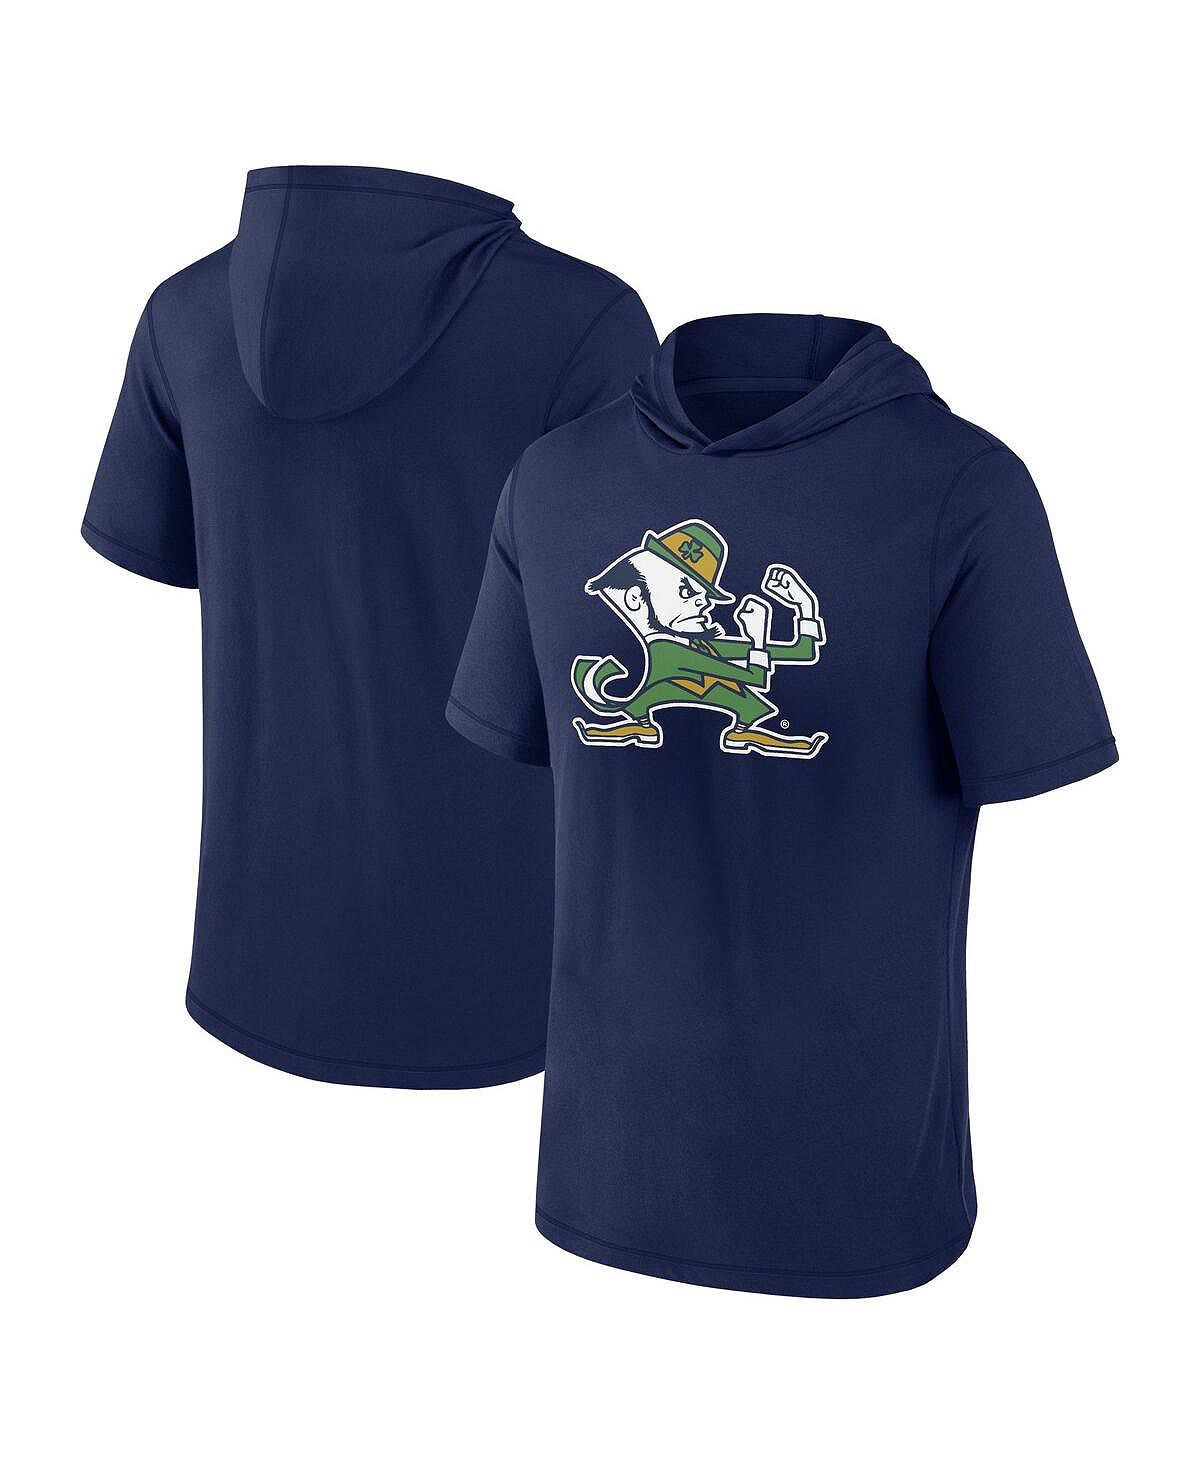 Мужская темно-синяя футболка с капюшоном с фирменным логотипом Notre Dame Fighting Irish Primary Fanatics